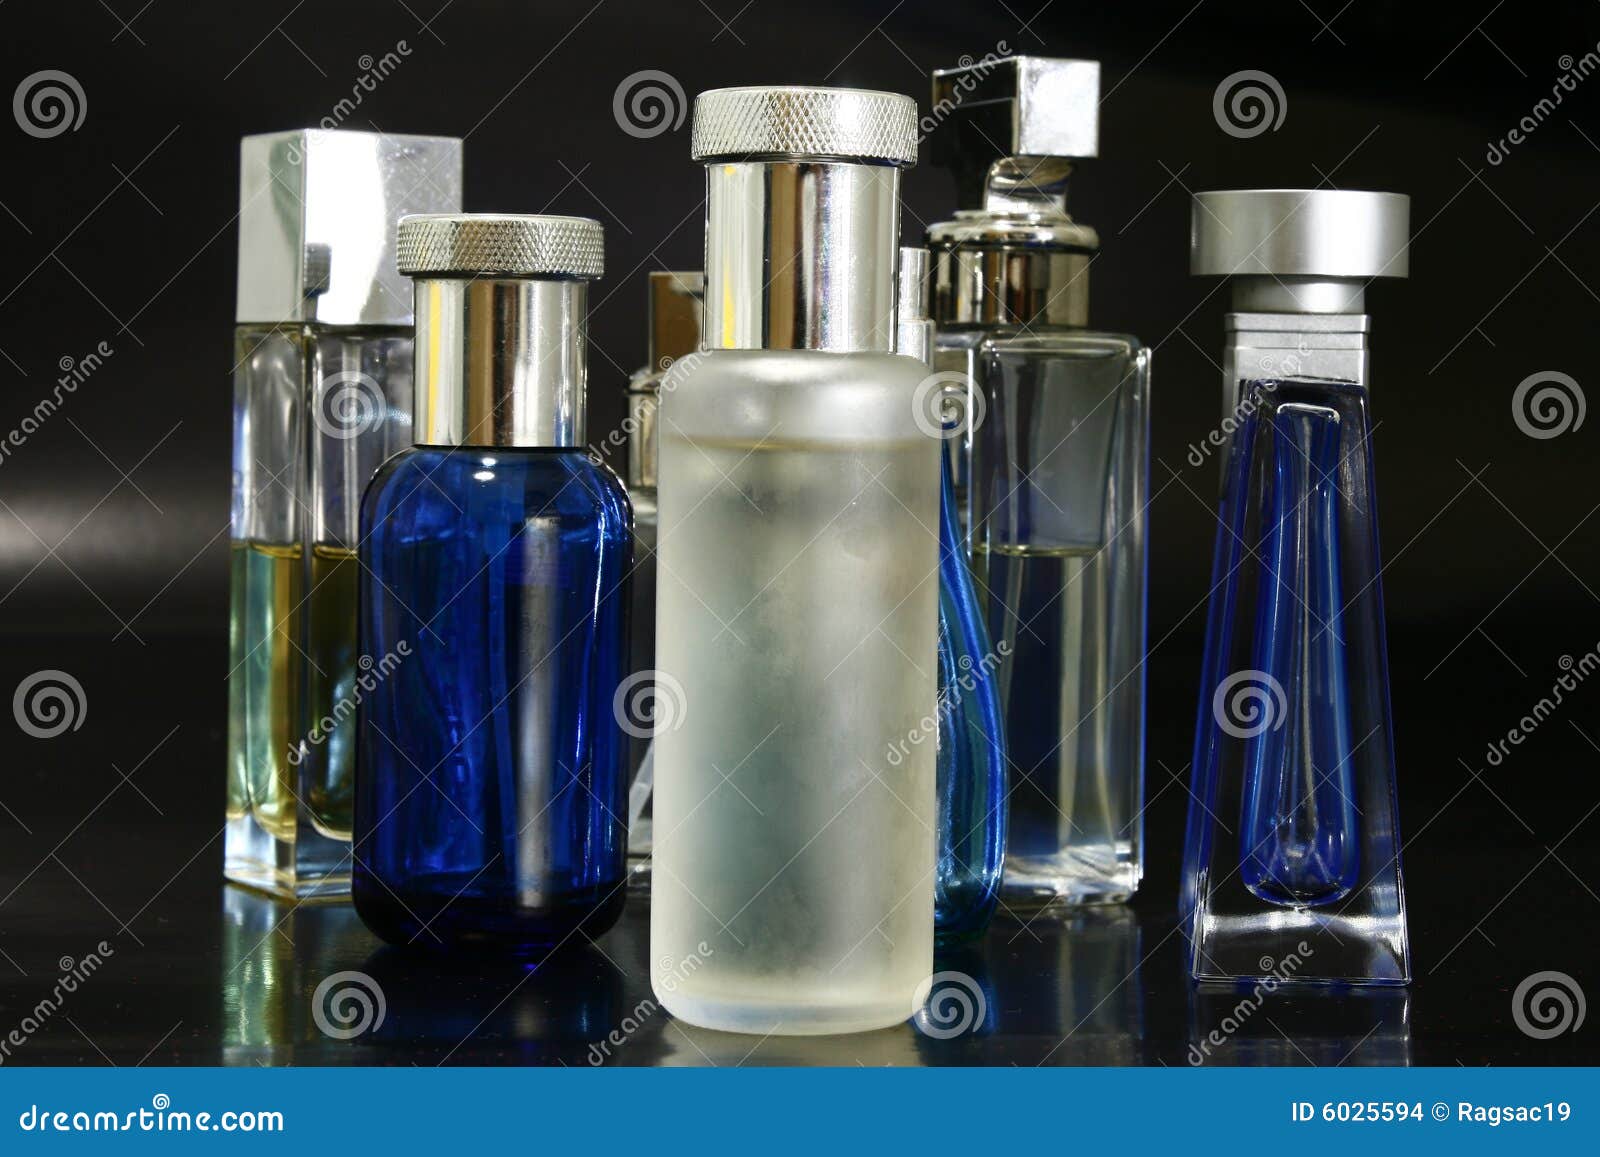 fragrances bottles